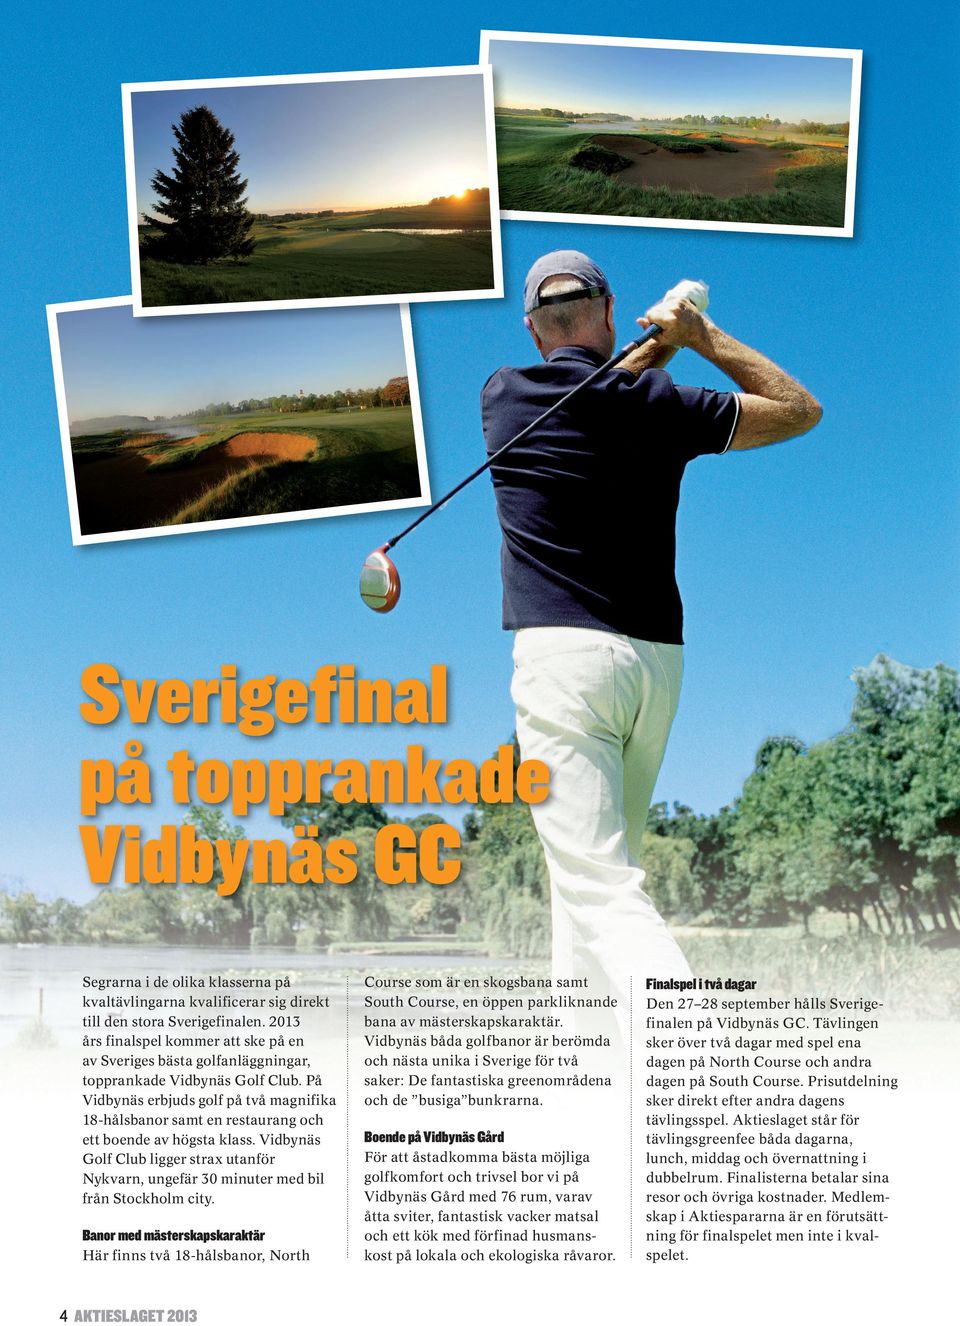 På Vidbynäs erbjuds golf på två magnifika 18-hålsbanor samt en restaurang och ett boende av högsta klass.